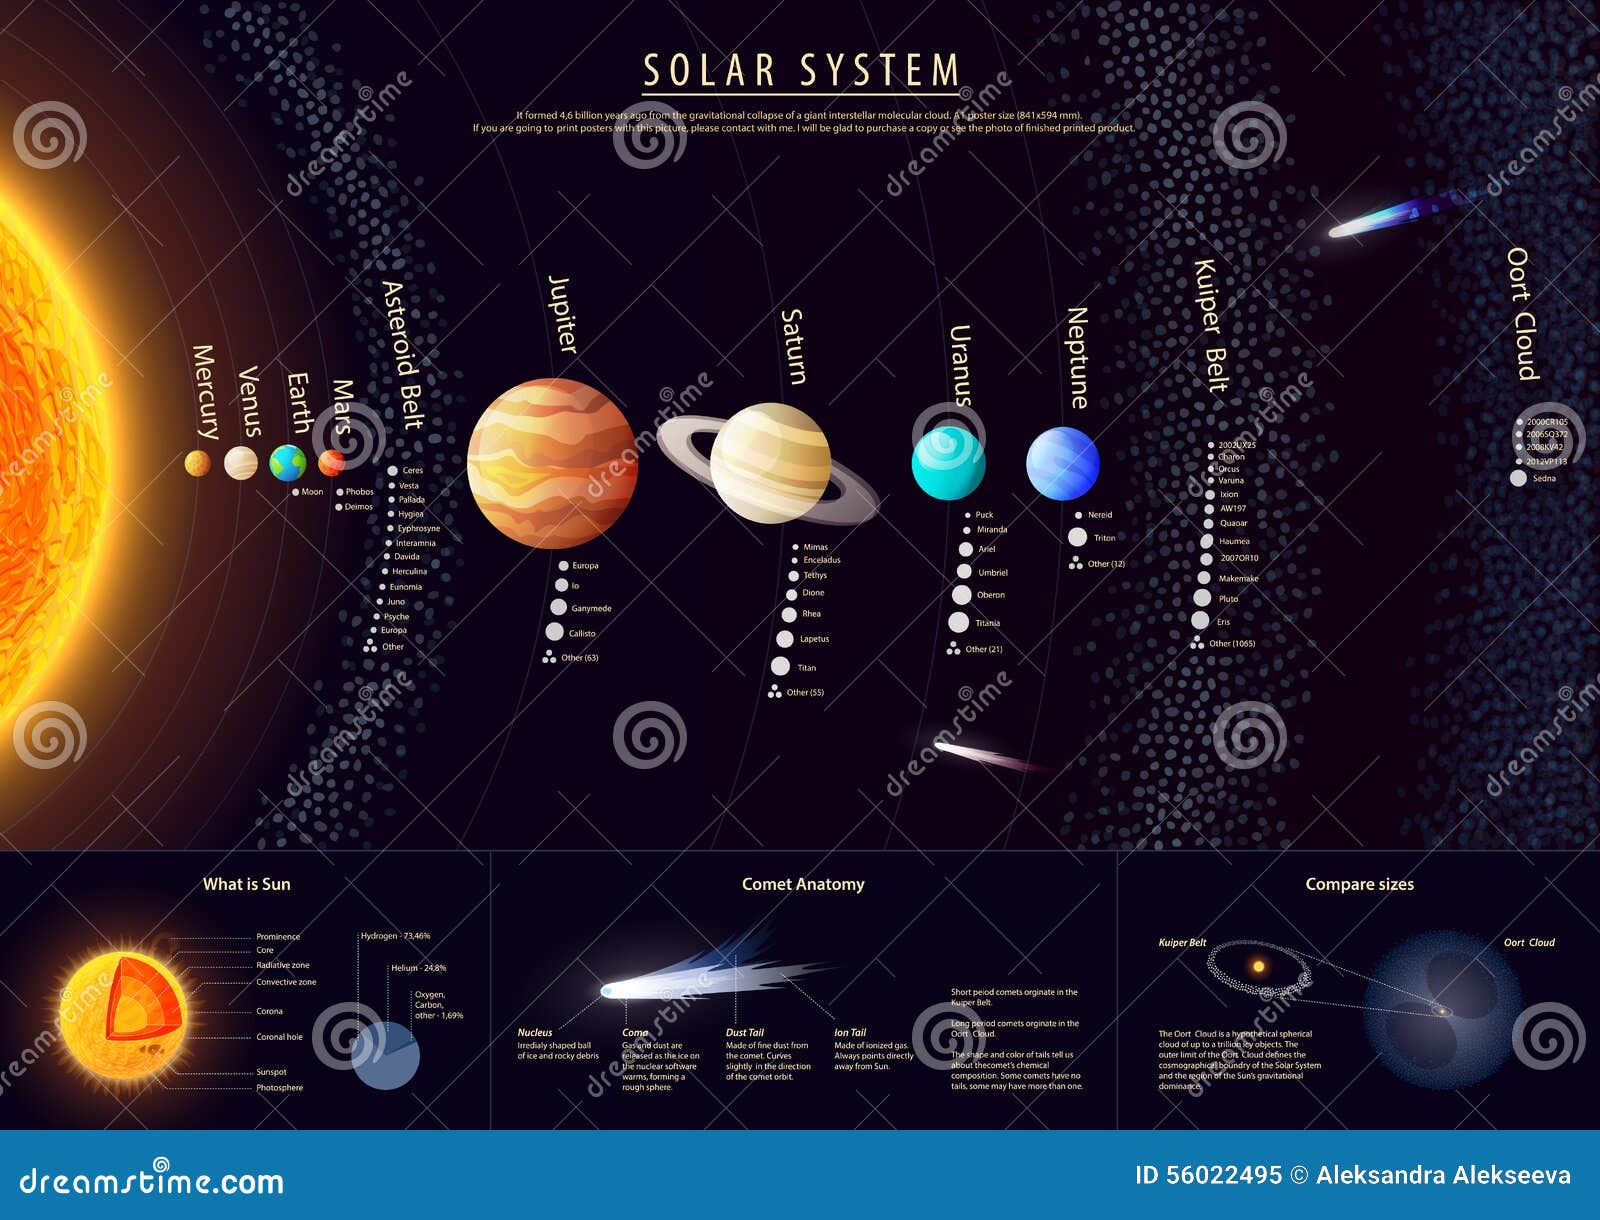 Реферат: Солнечная система в центре внимания науки